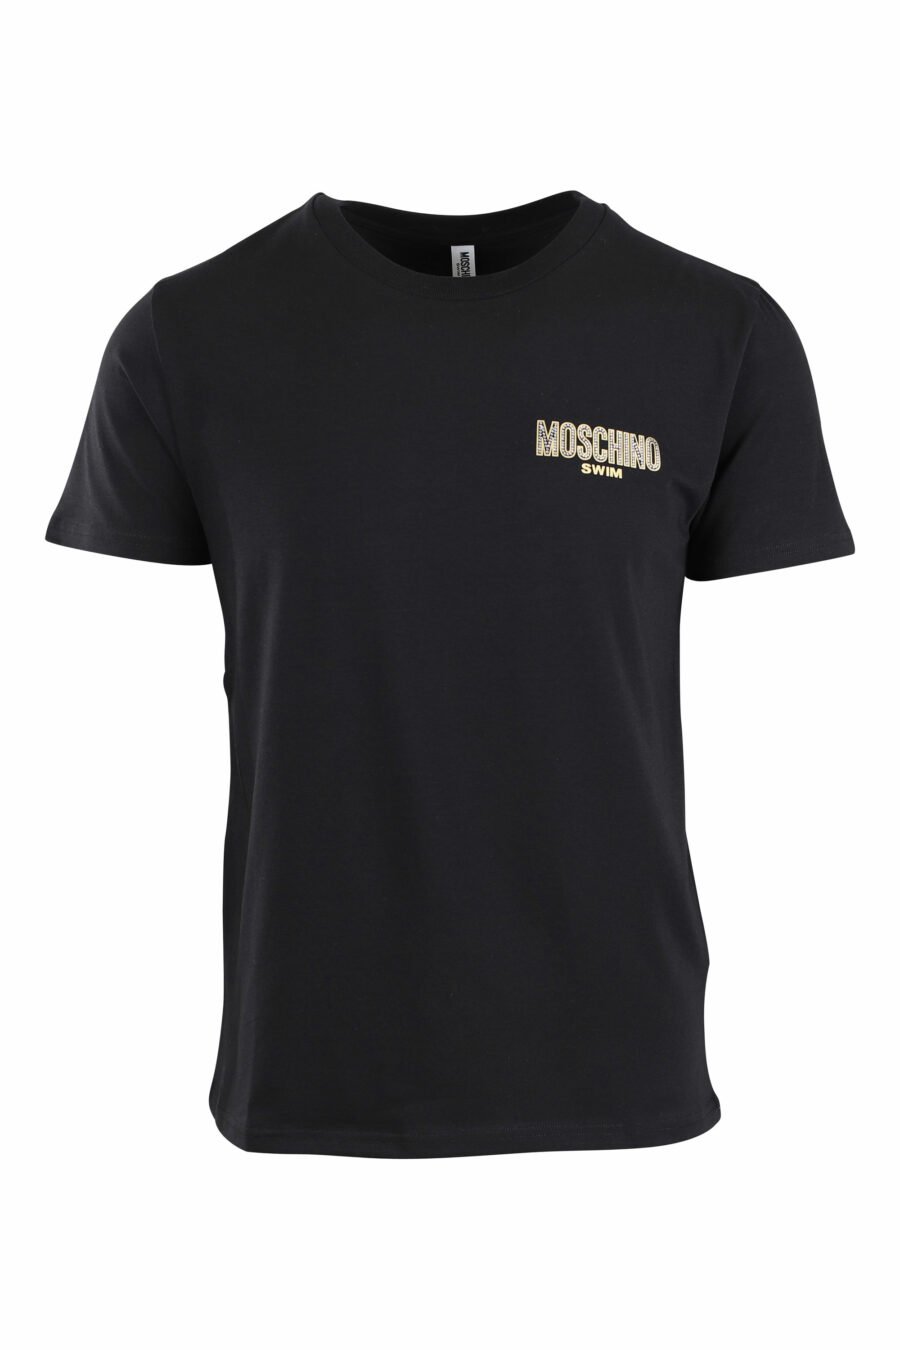 T-shirt schwarz mit kleinem goldenen Logo mit Strasssteinen - IMG 2654